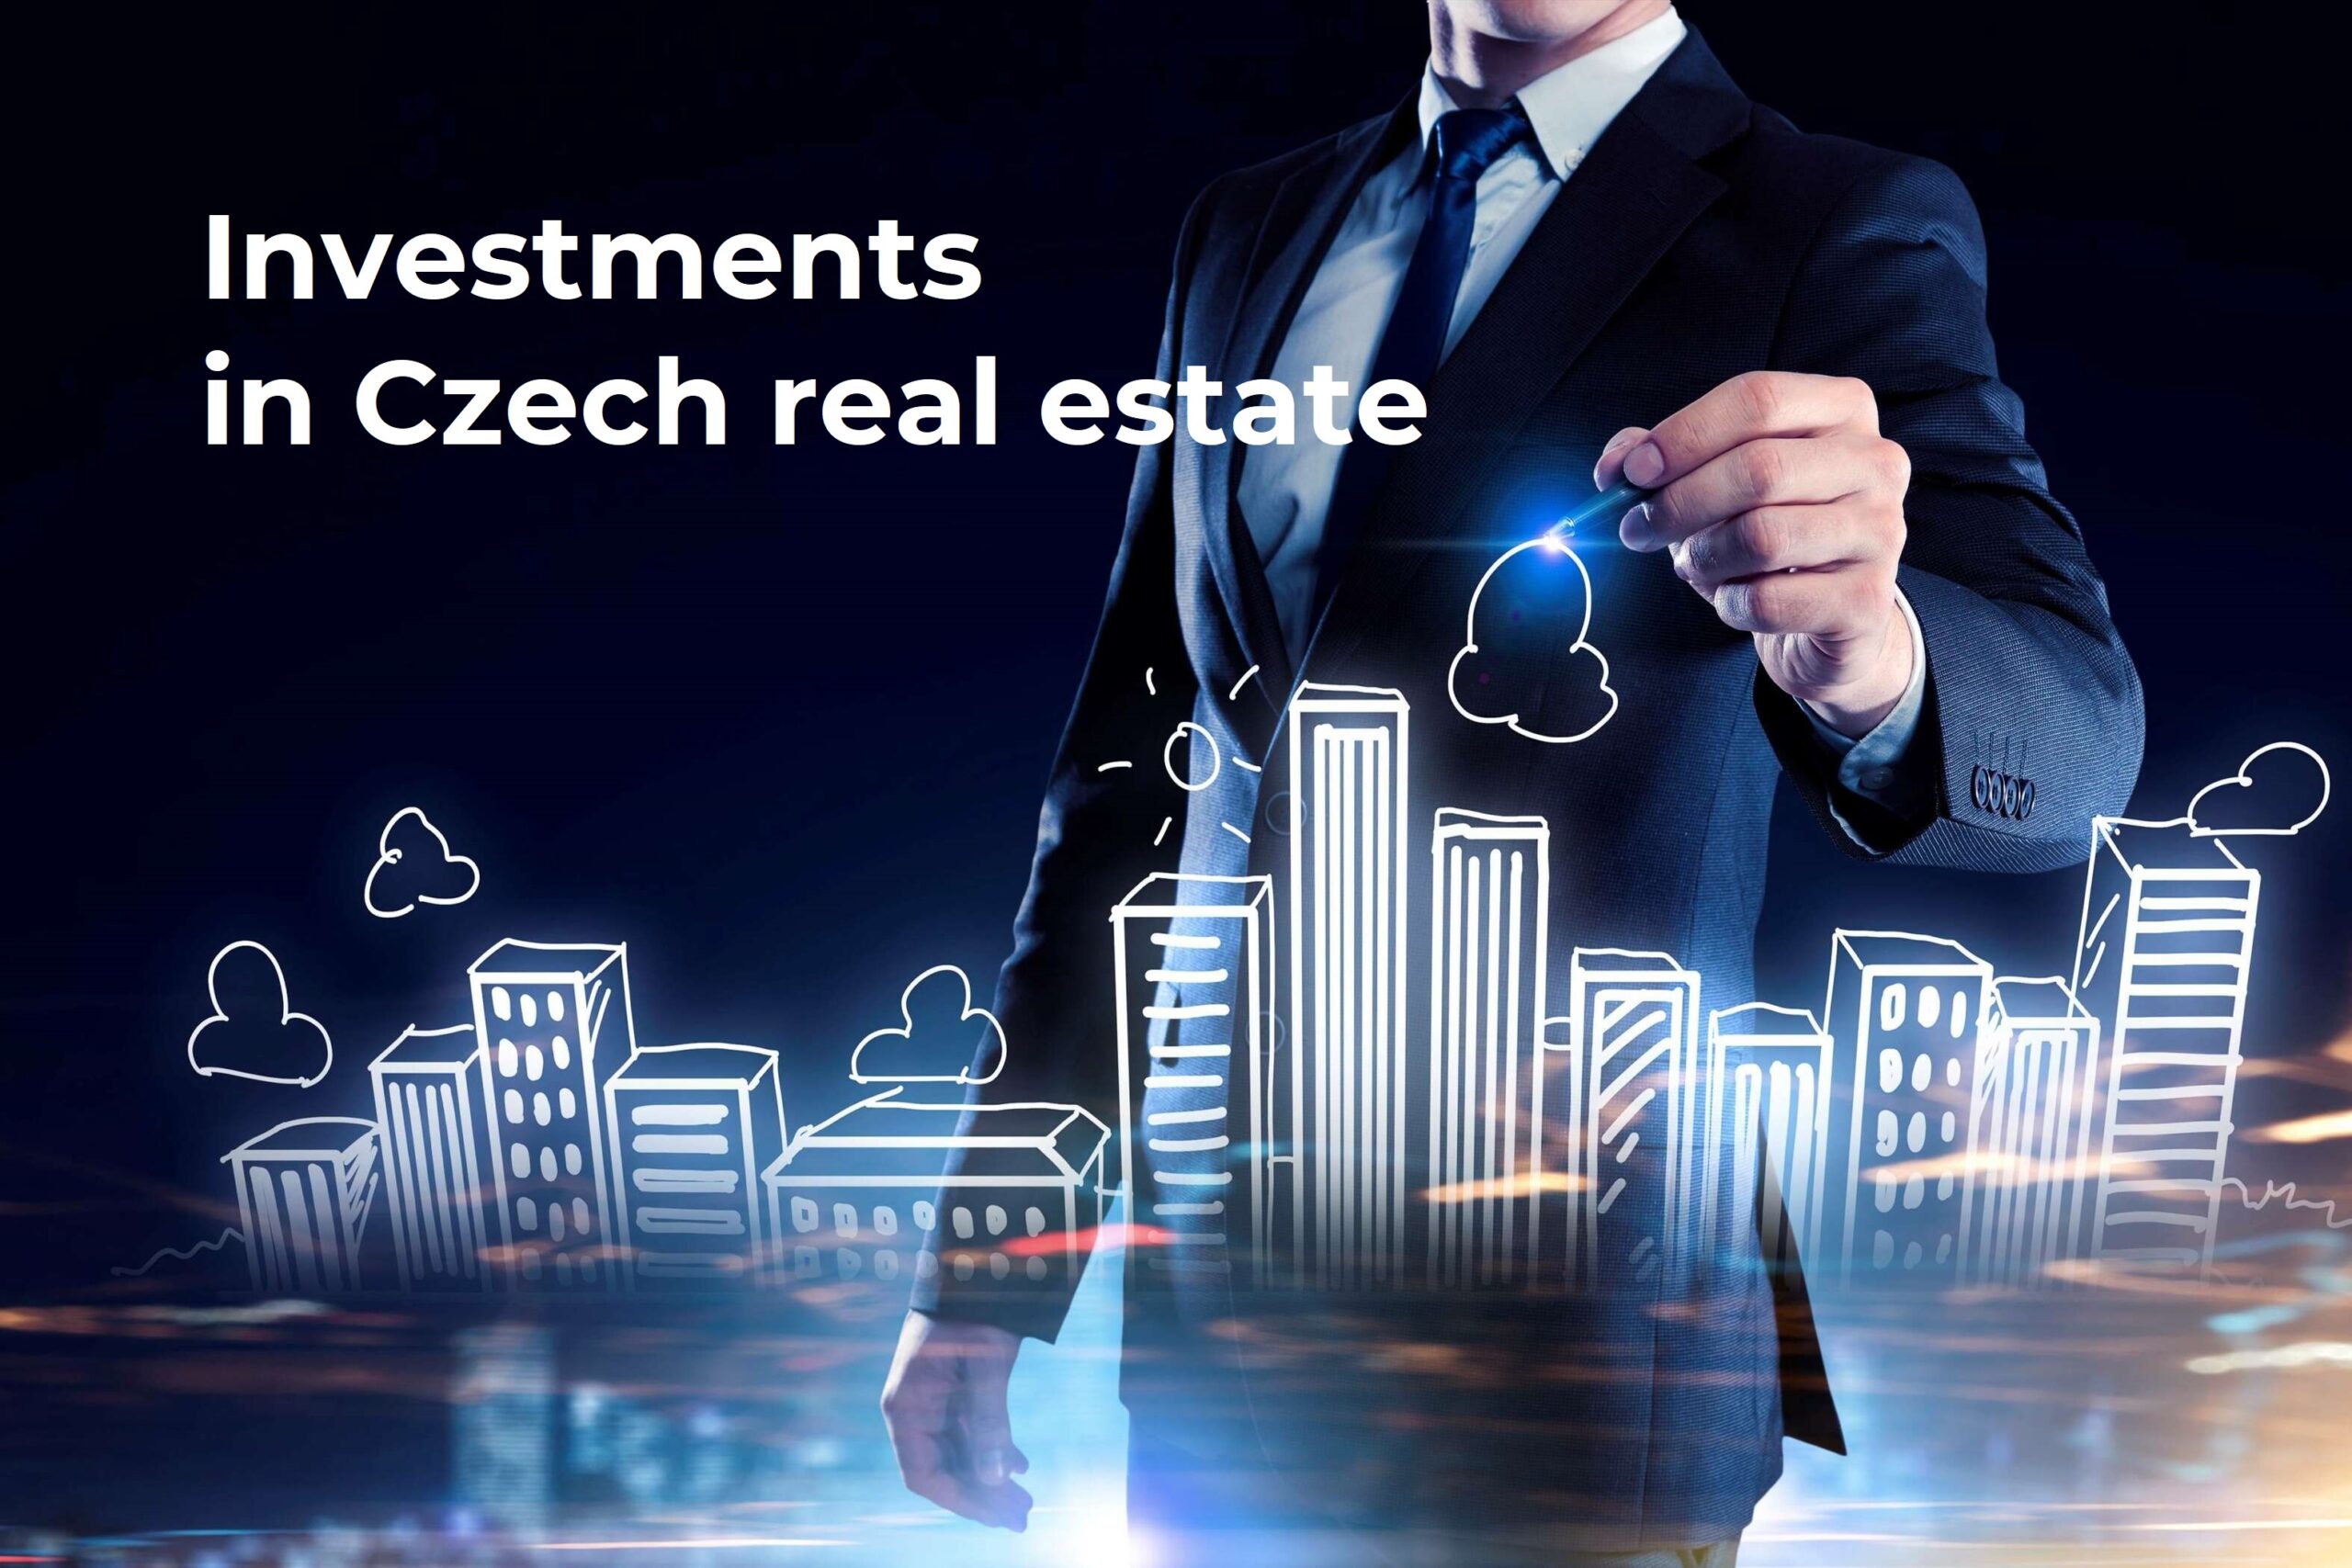 Продается компания, деятельностью которой является реализация зарубежных инвестиций в недвижимость на чешском и словацком рынках